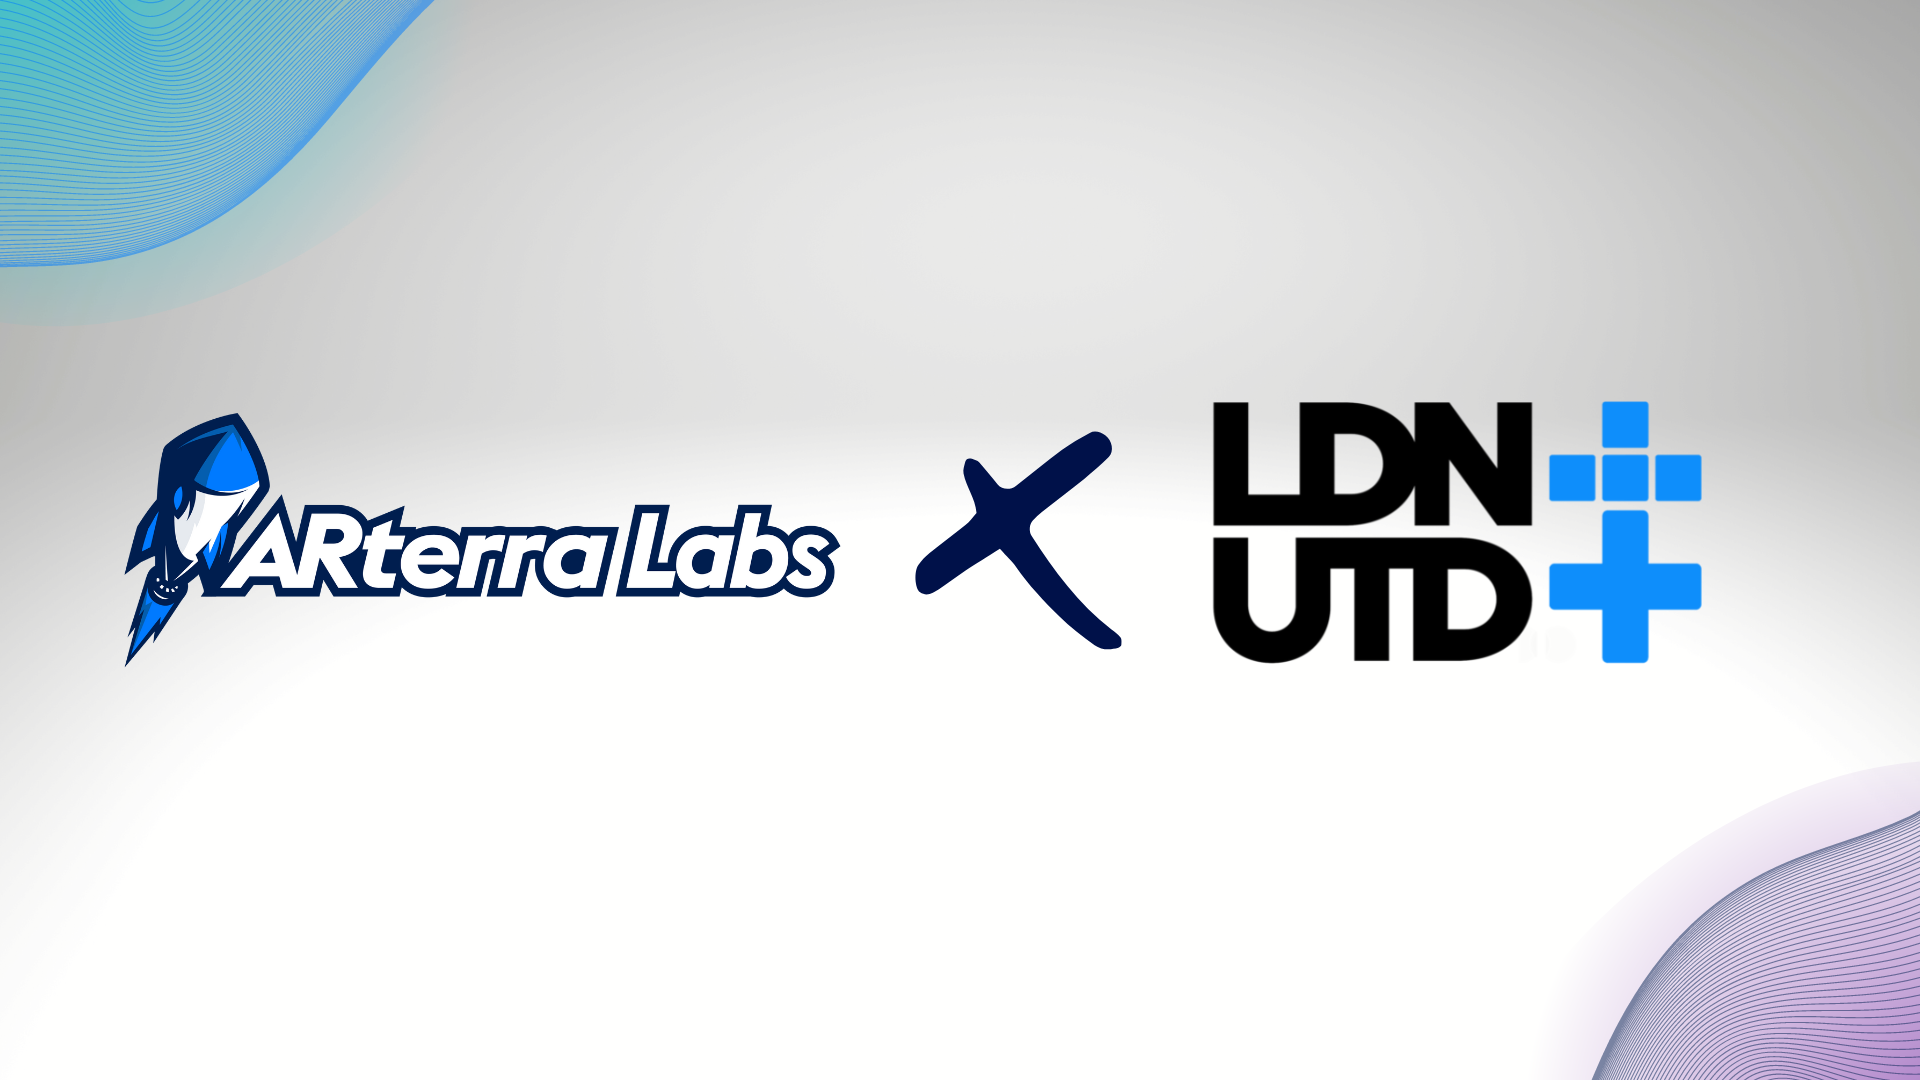 ARterra Labs x LDN UTD Partnership